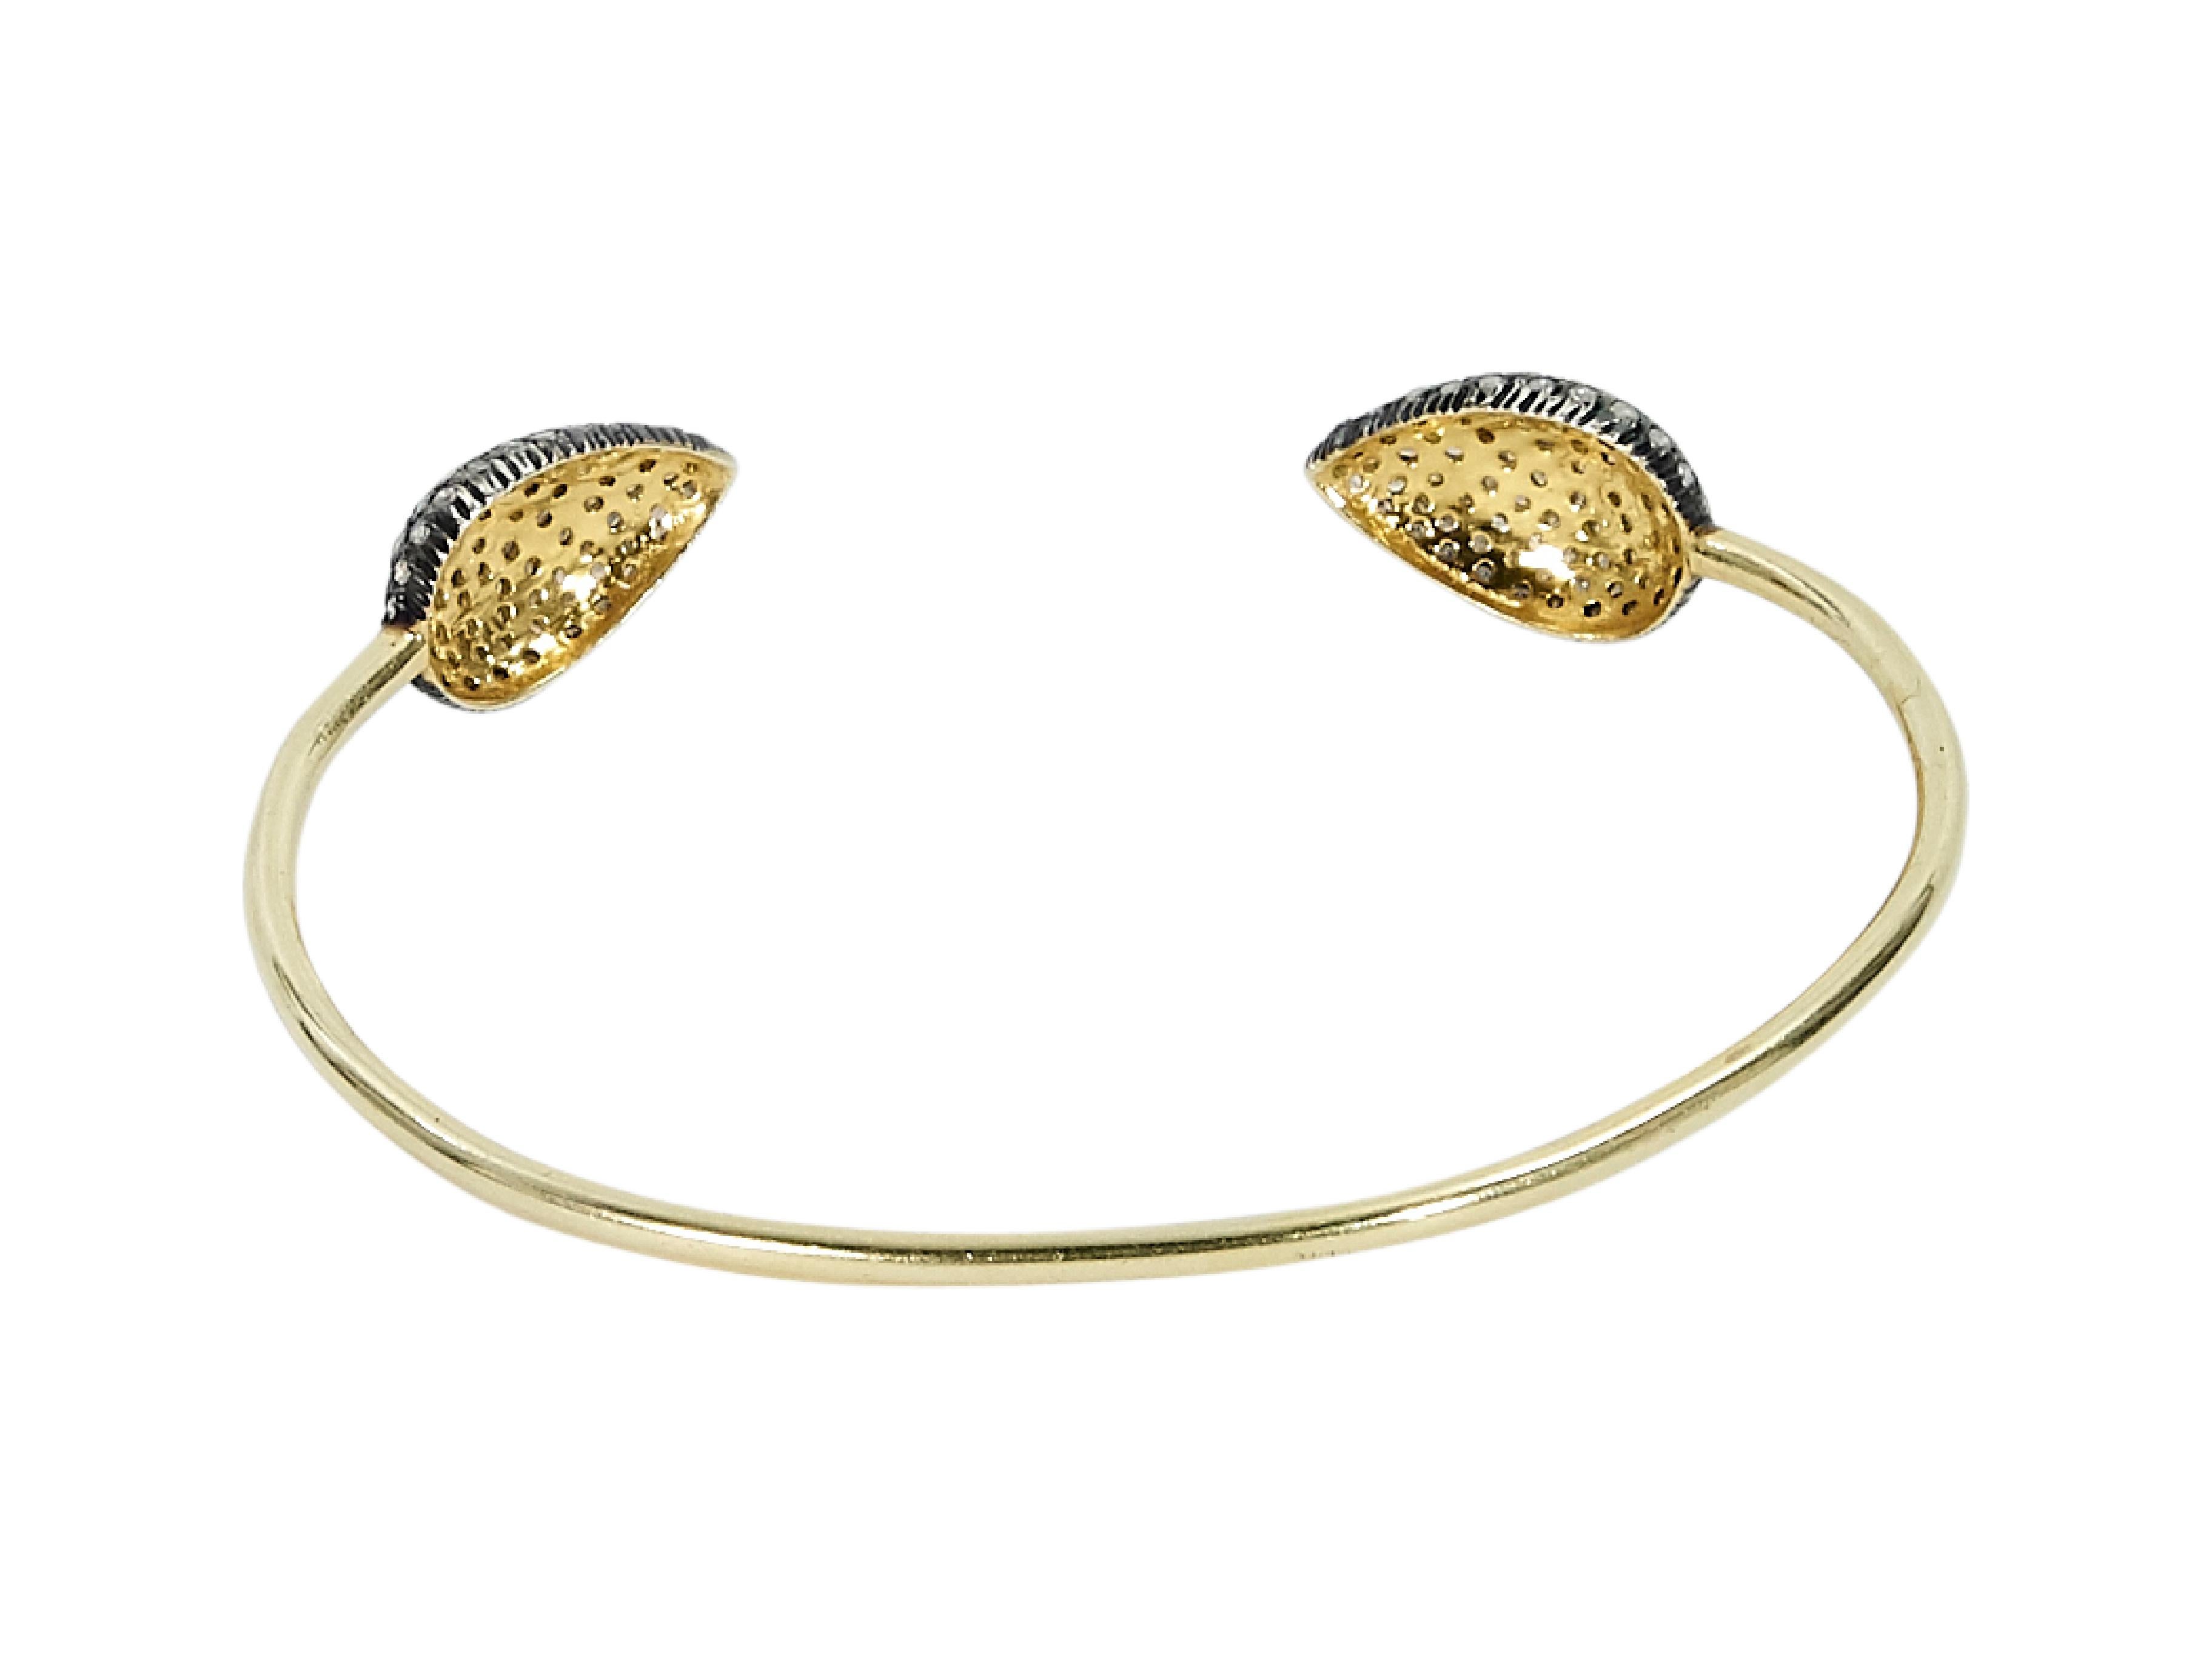 Product details:  Goldtone cuff bracelet by Jennifer Miller.  Crystal embellished ends.  8